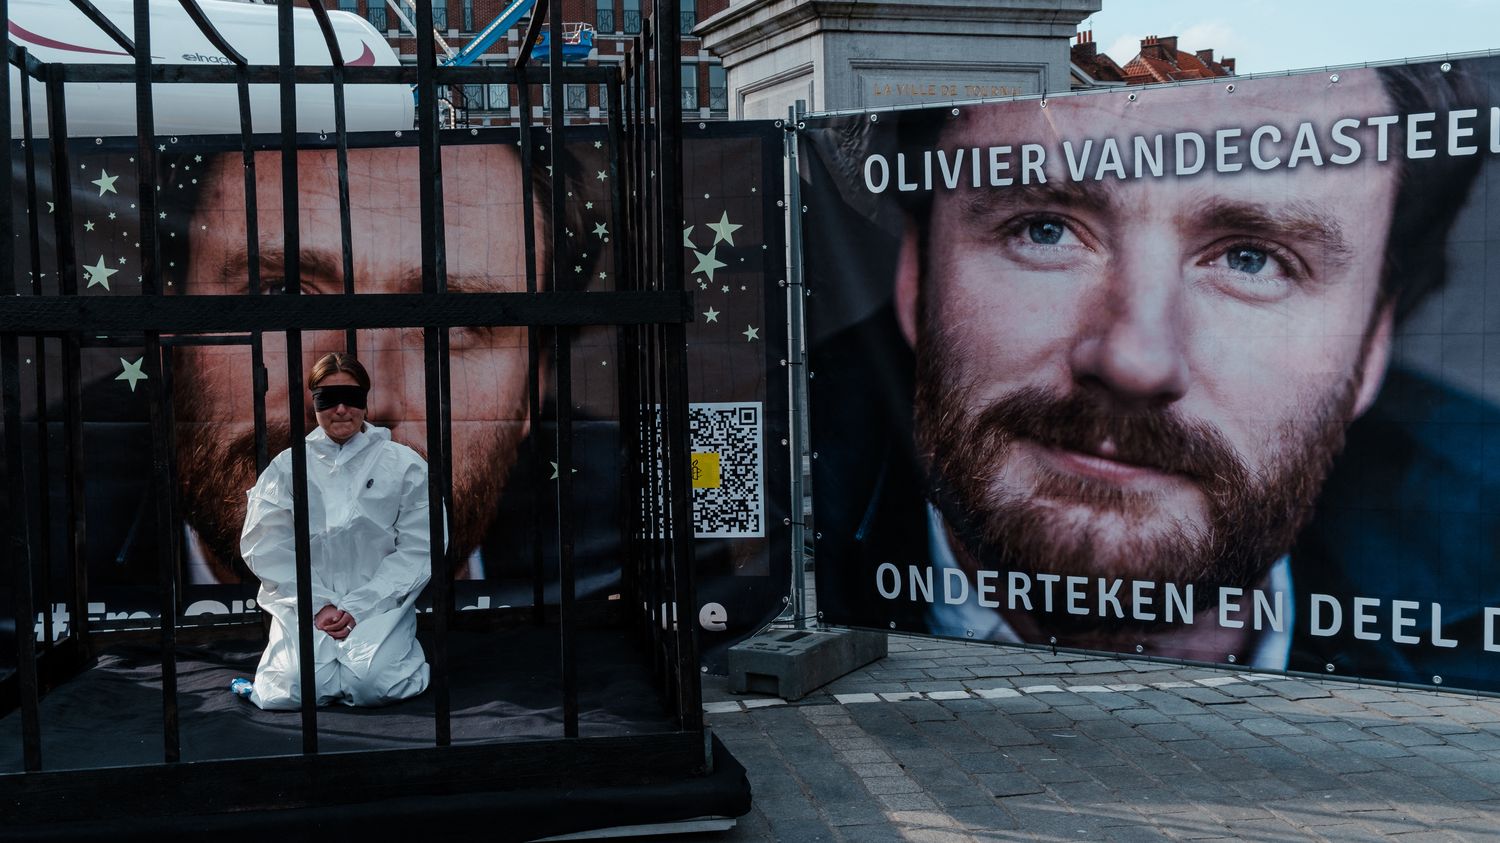 Iran releases Belgian humanitarian Olivier Vandecasteele in prisoner swap
